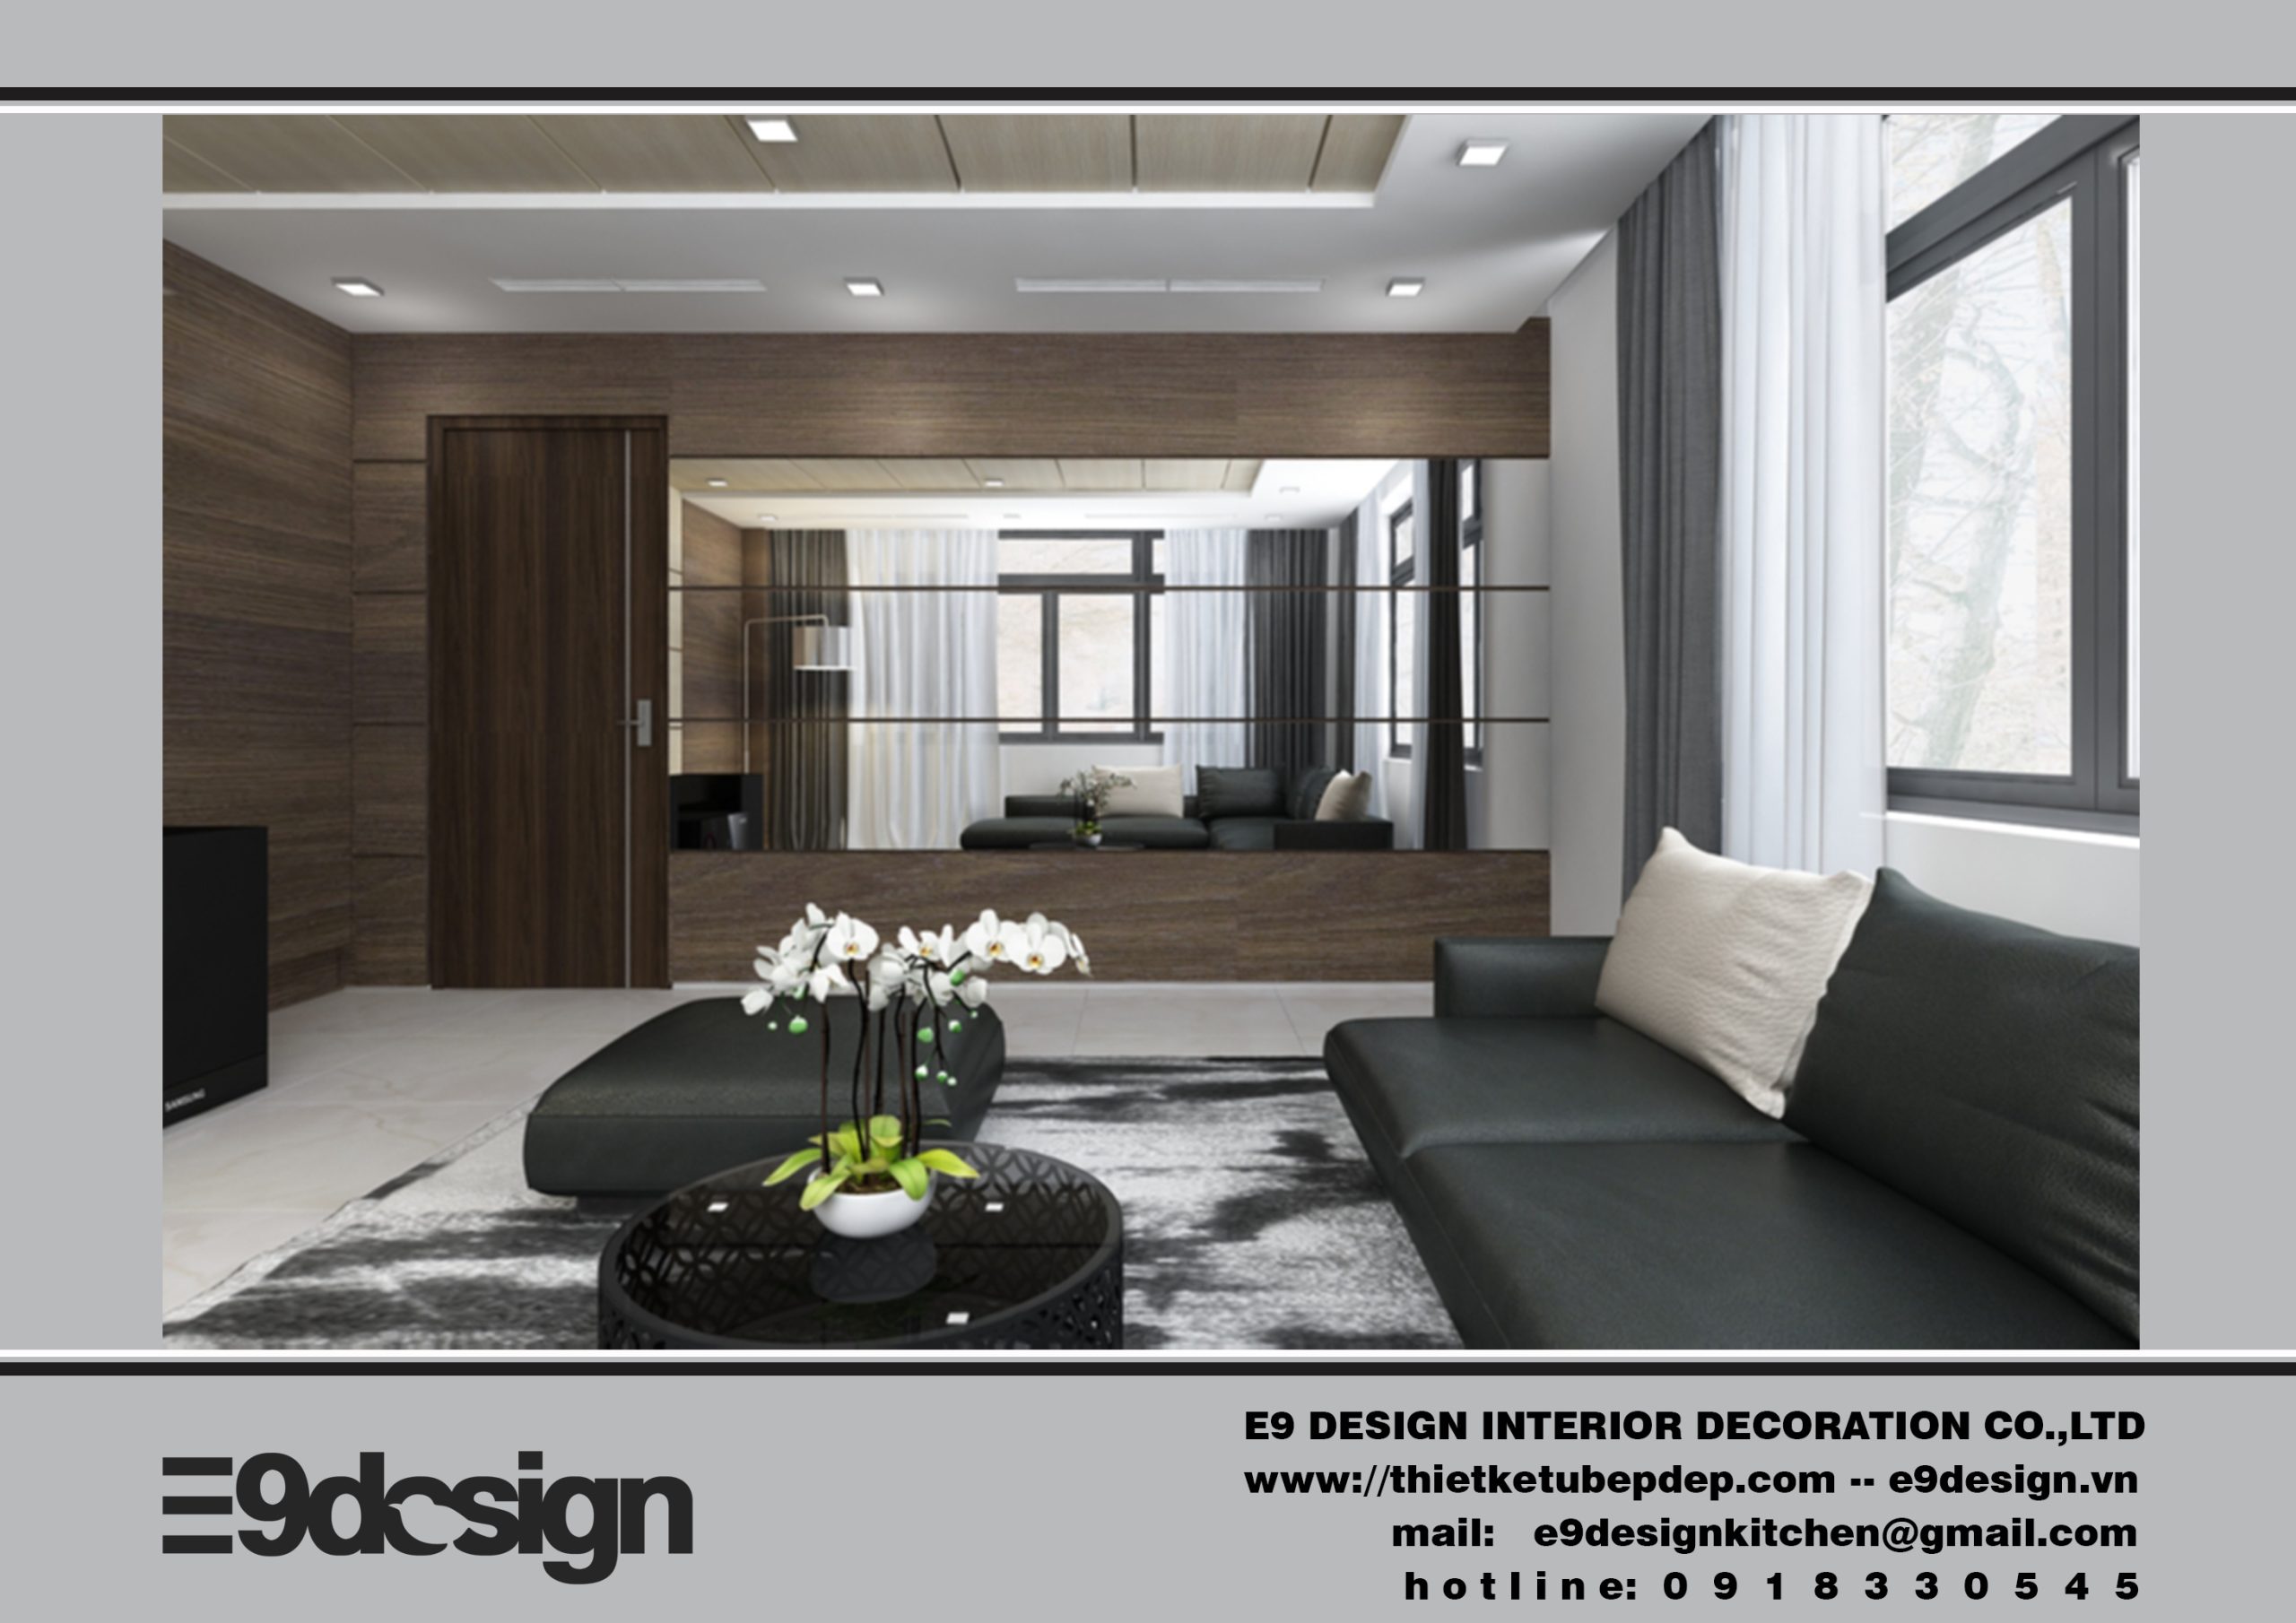 E9 Design là đơn vị thiết kế và thi công nội thất chuyên nghiệp